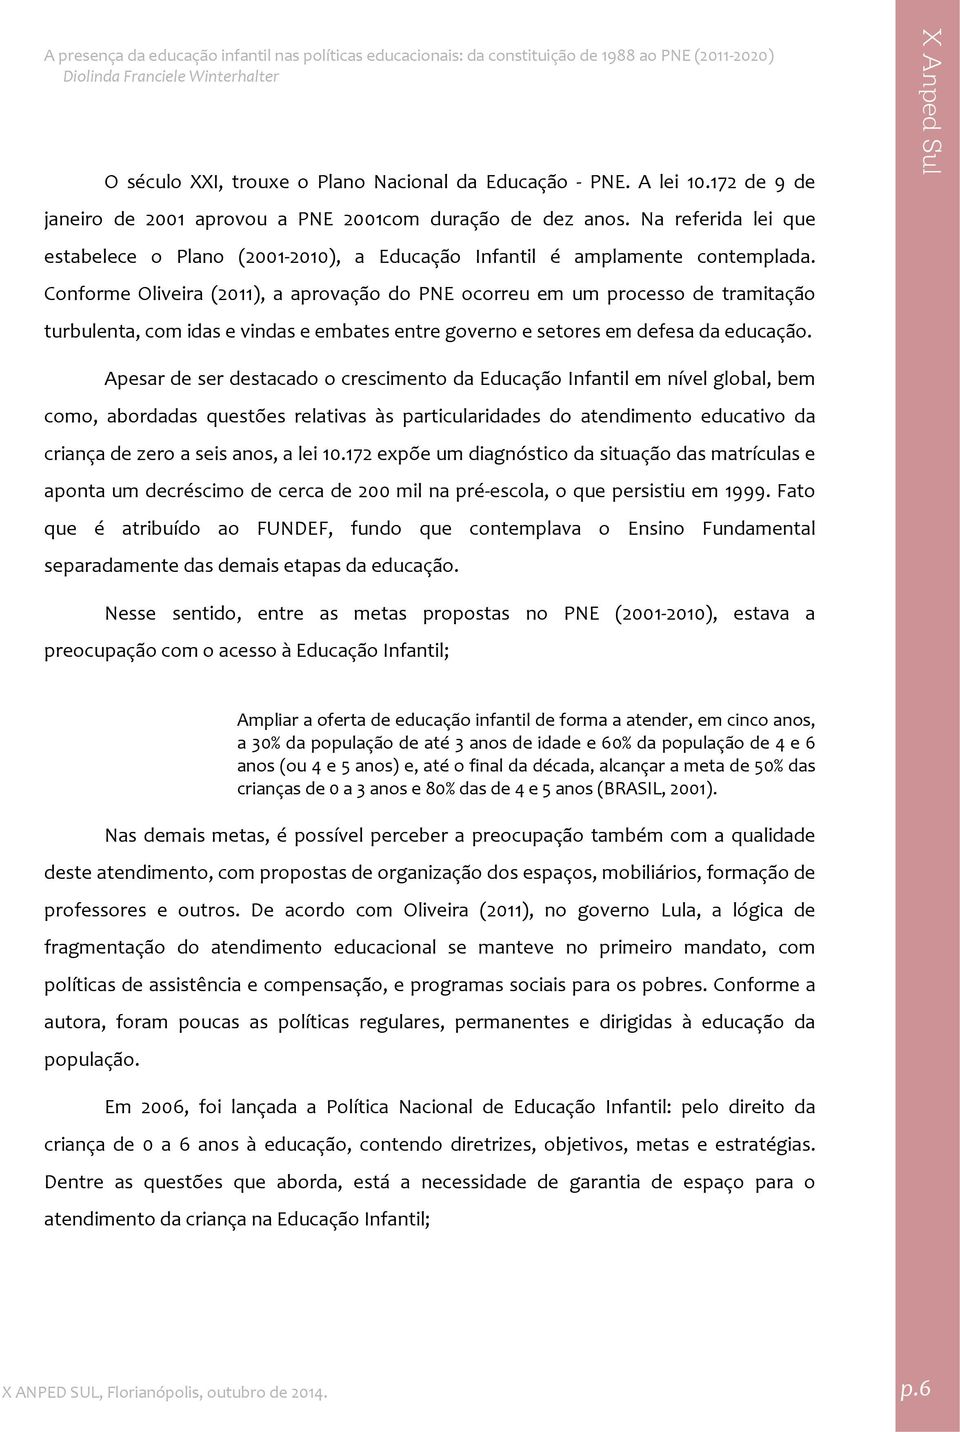 Conforme Oliveira (2011), a aprovação do PNE ocorreu em um processo de tramitação turbulenta, com idas e vindas e embates entre governo e setores em defesa da educação.